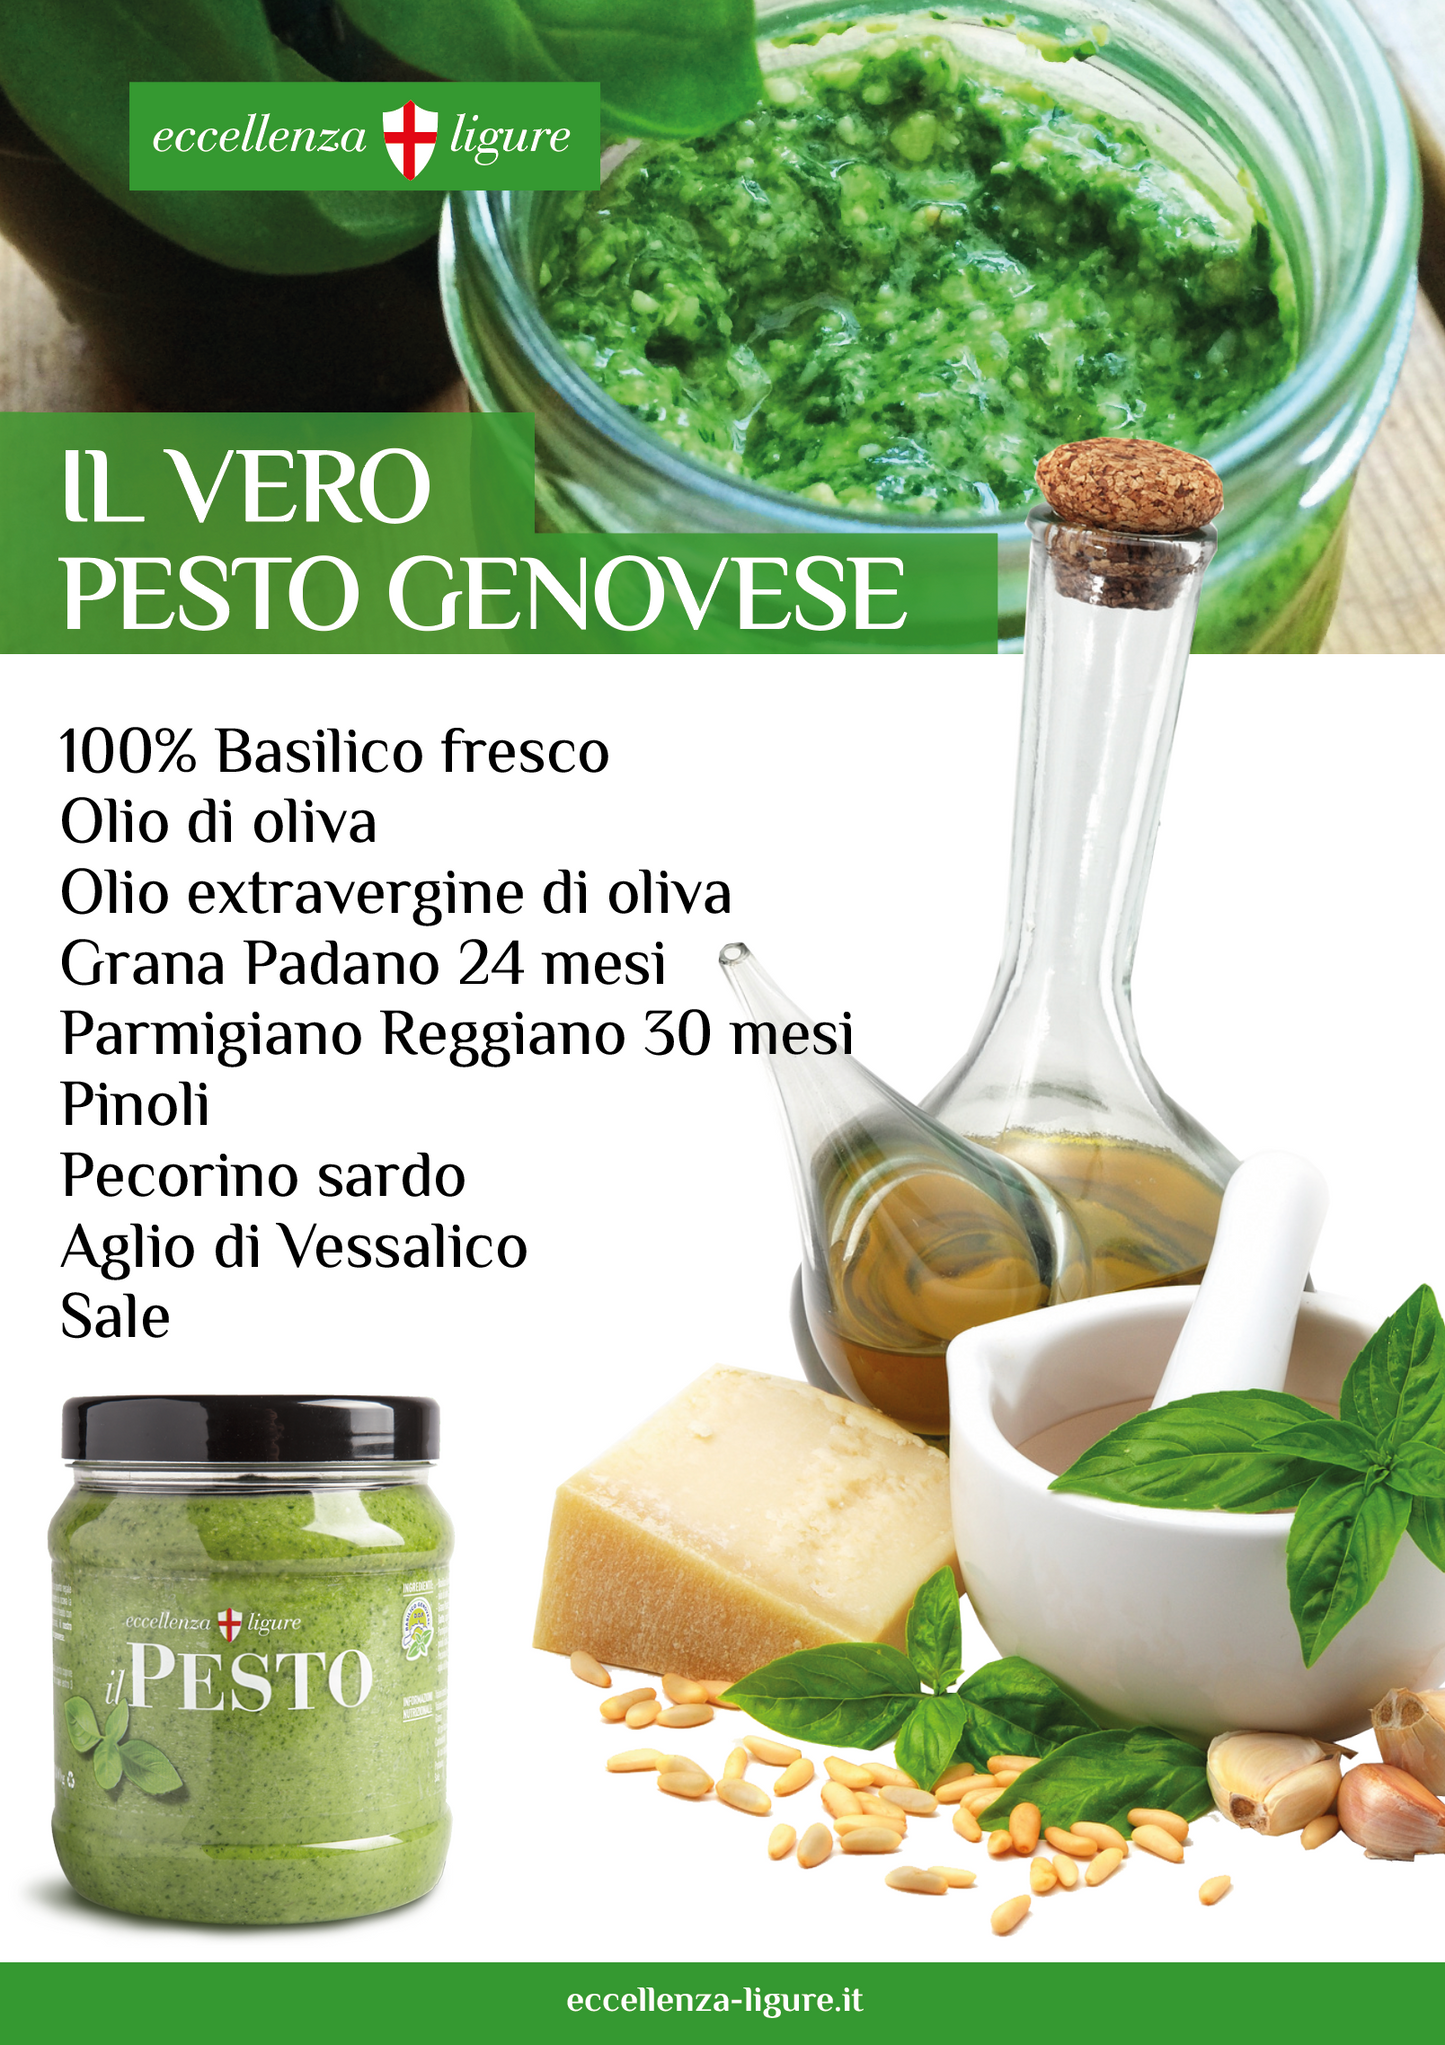 Pesto Genovese con Basilico Fresco 4 barattoli da 250g- Imballo e spedizione nazionale Inclusa!